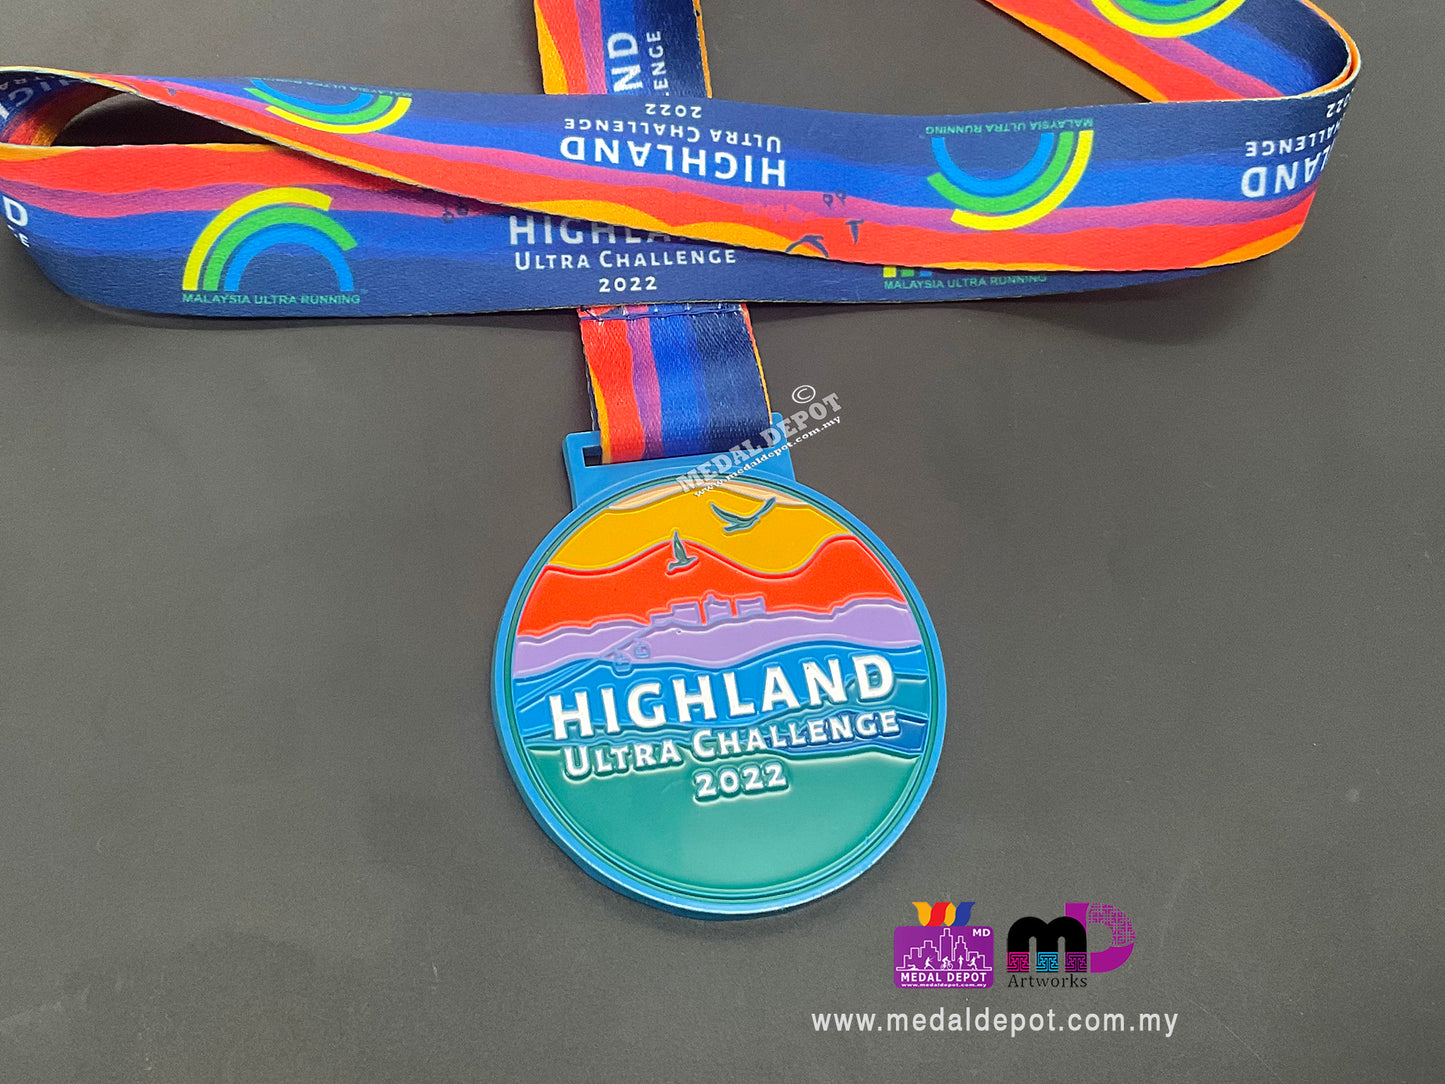 Highland Ultra Challenge 2022 medal